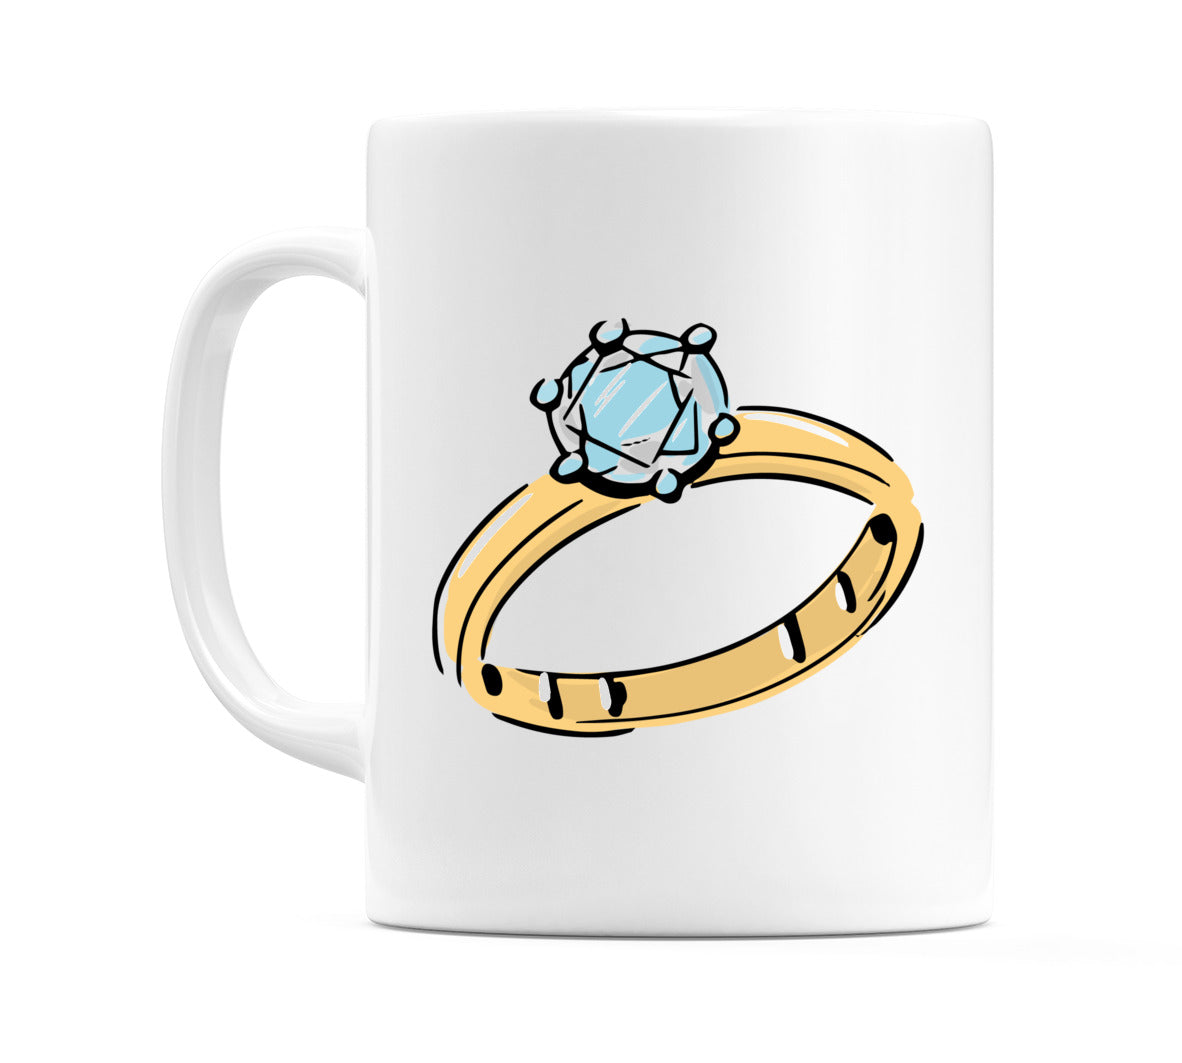 Wedding Ring Side Angled Mug